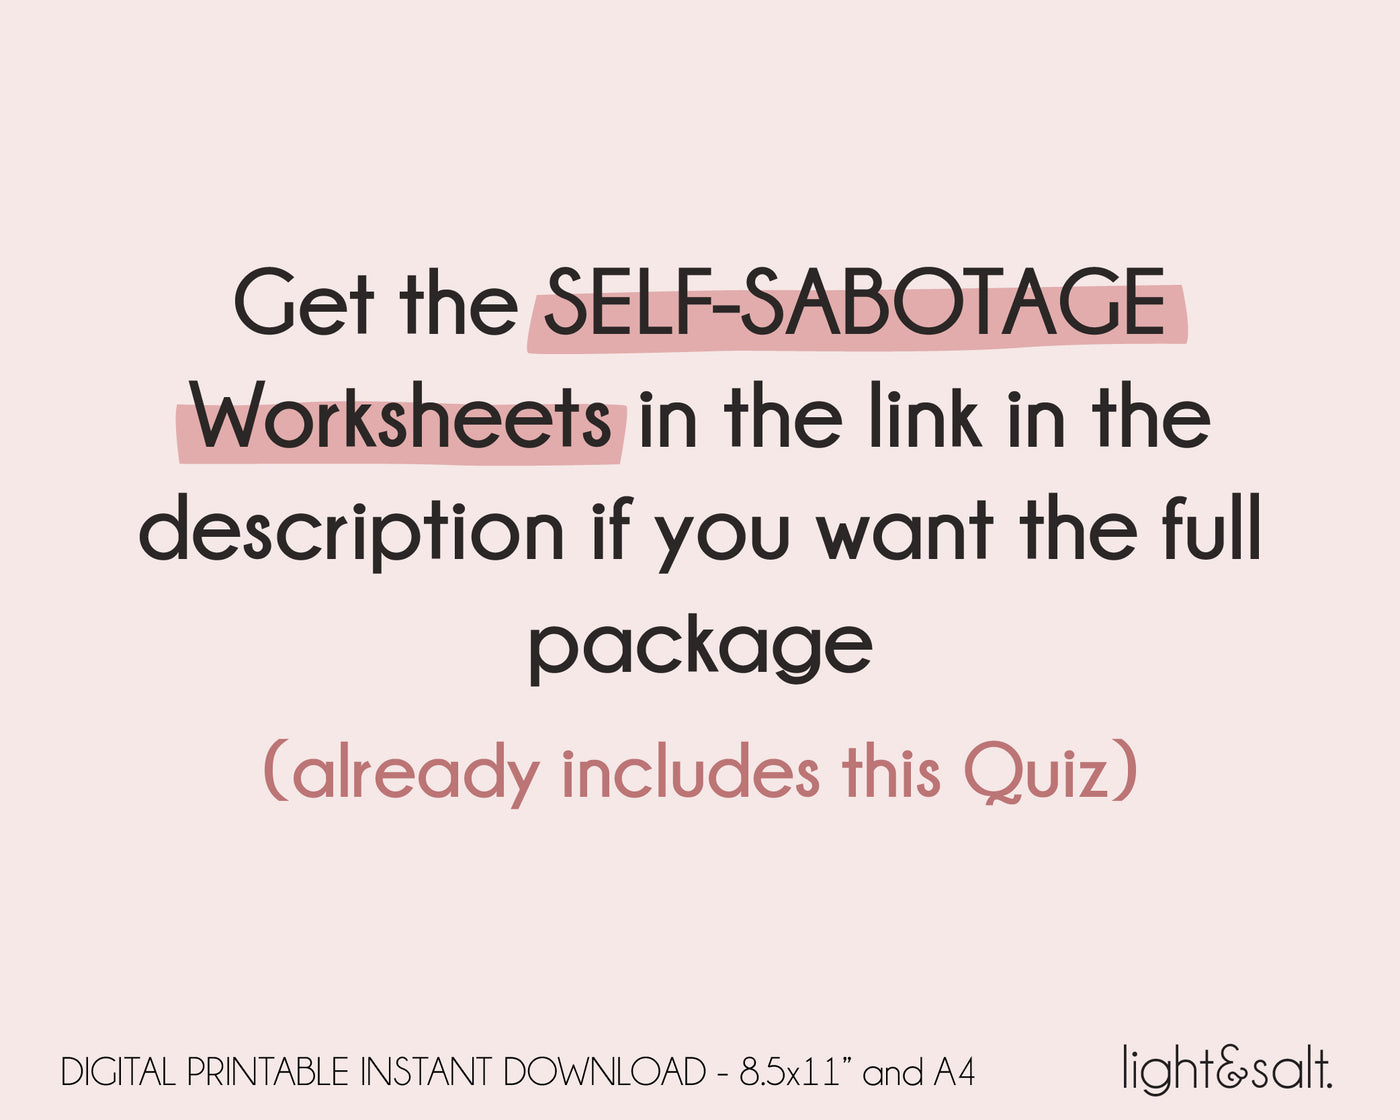 Self Sabotage Quiz